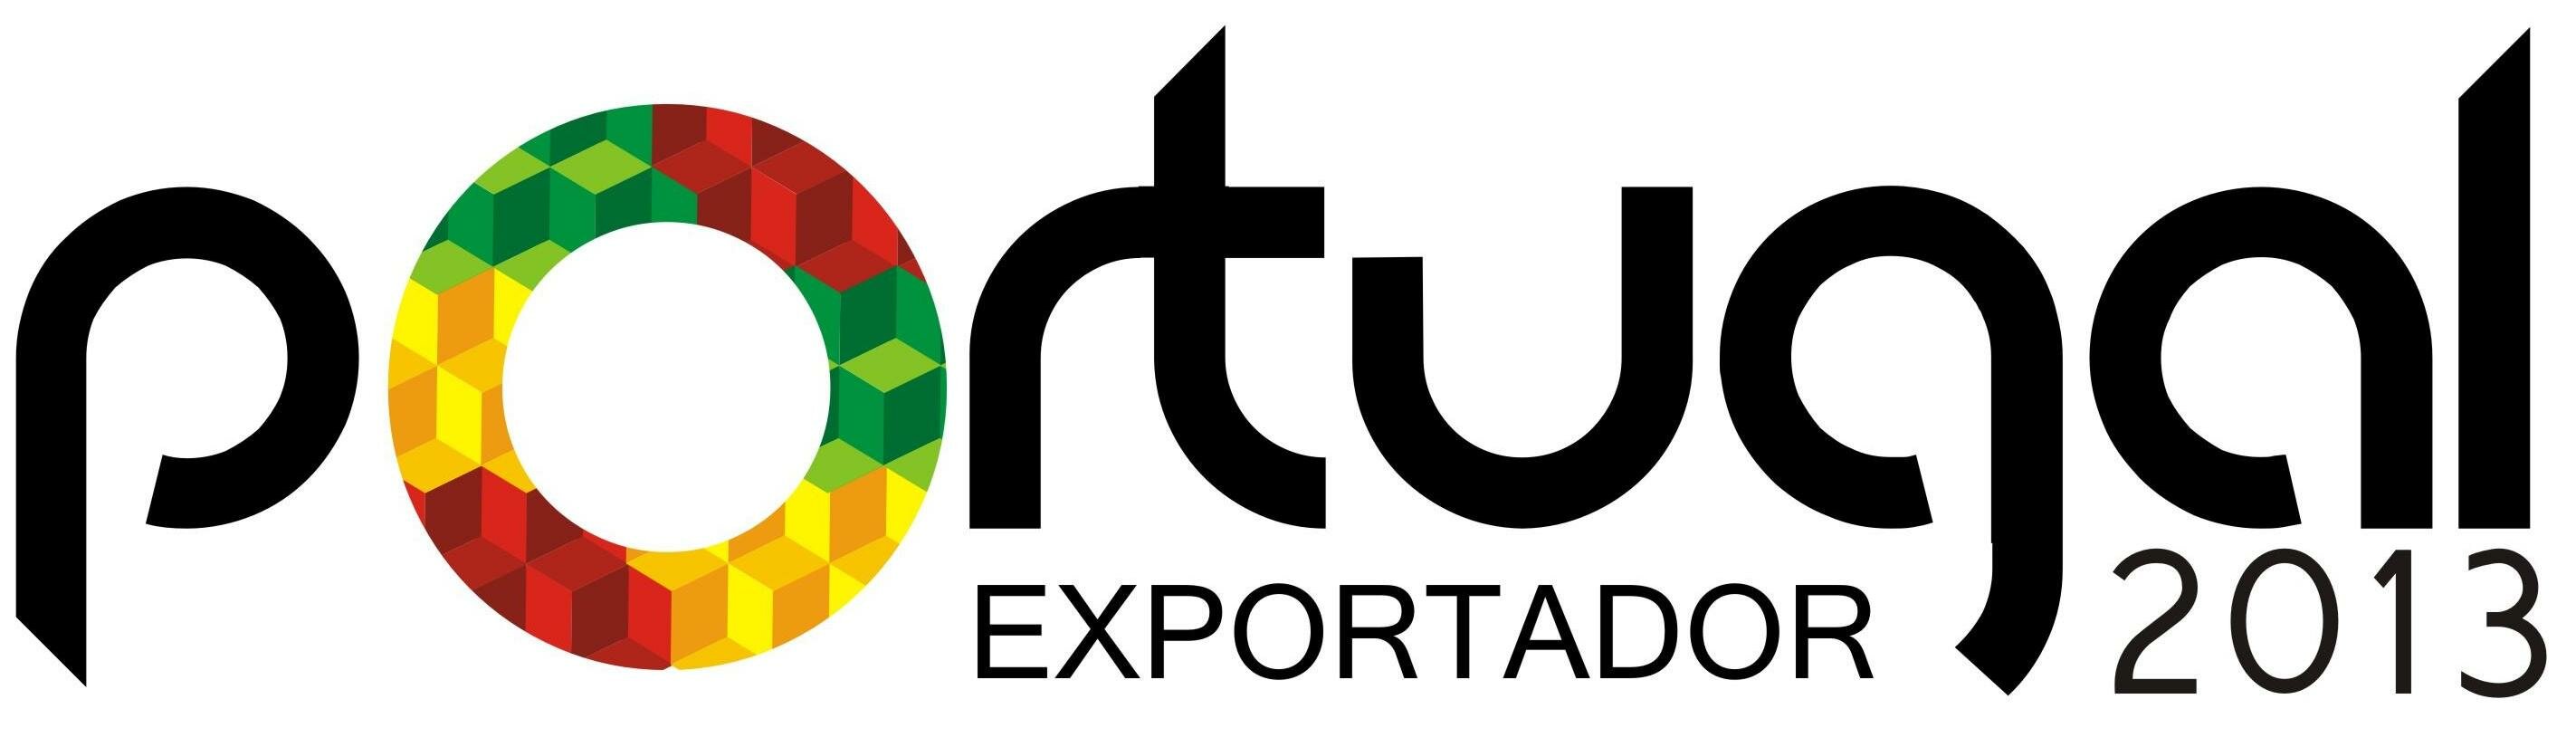 portugal exportador